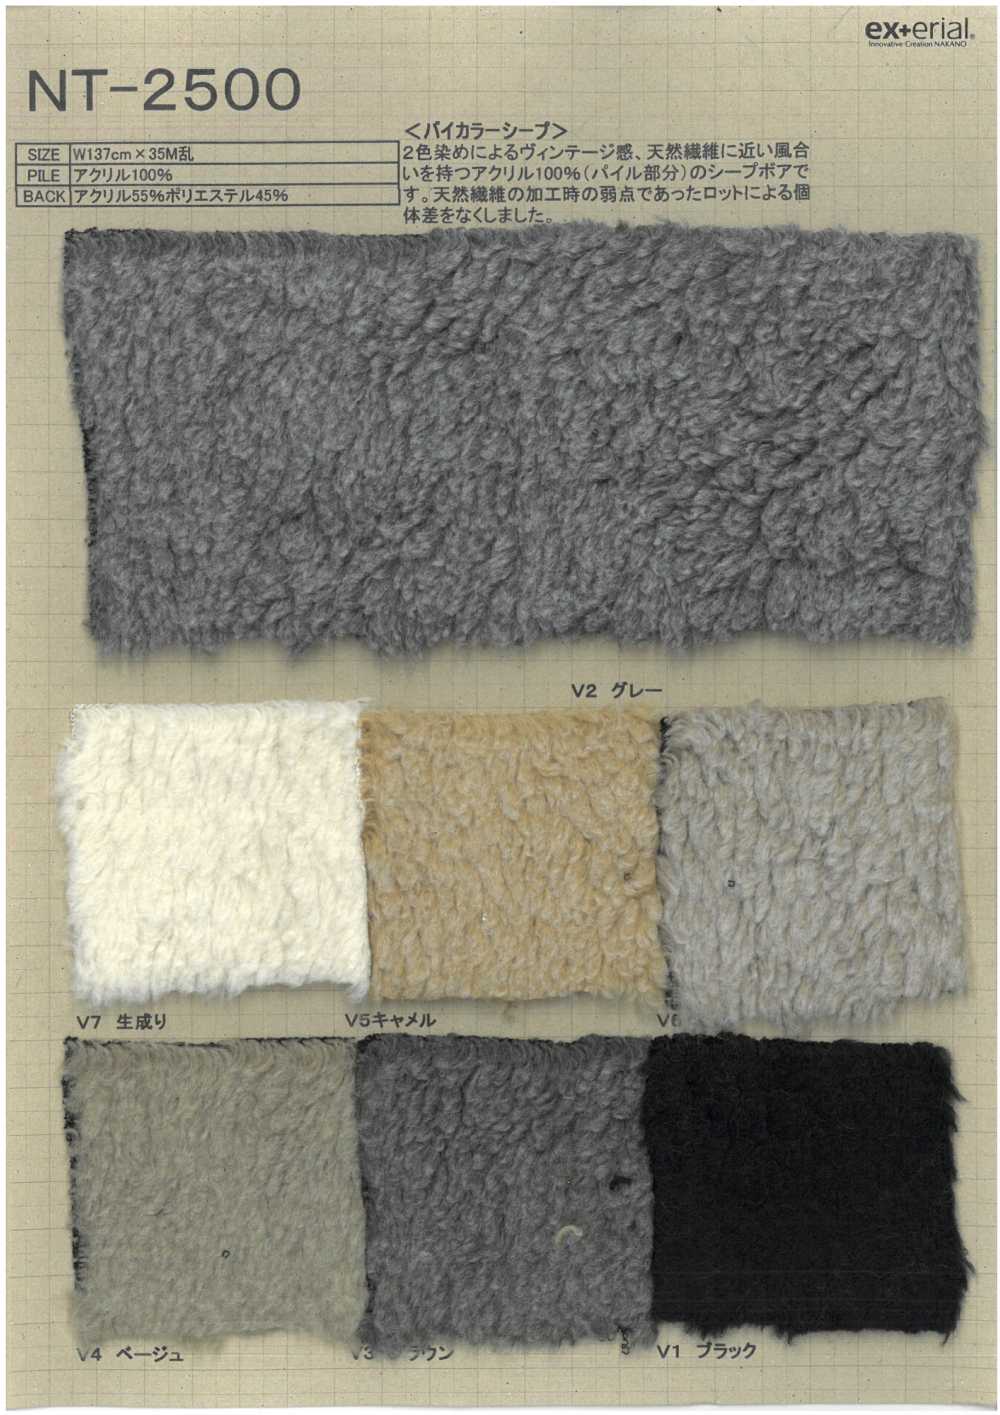 NT-2500 Pelliccia Artigianale [Pecora Bicolore][Tessile / Tessuto] Industria Delle Magliette A Nakano